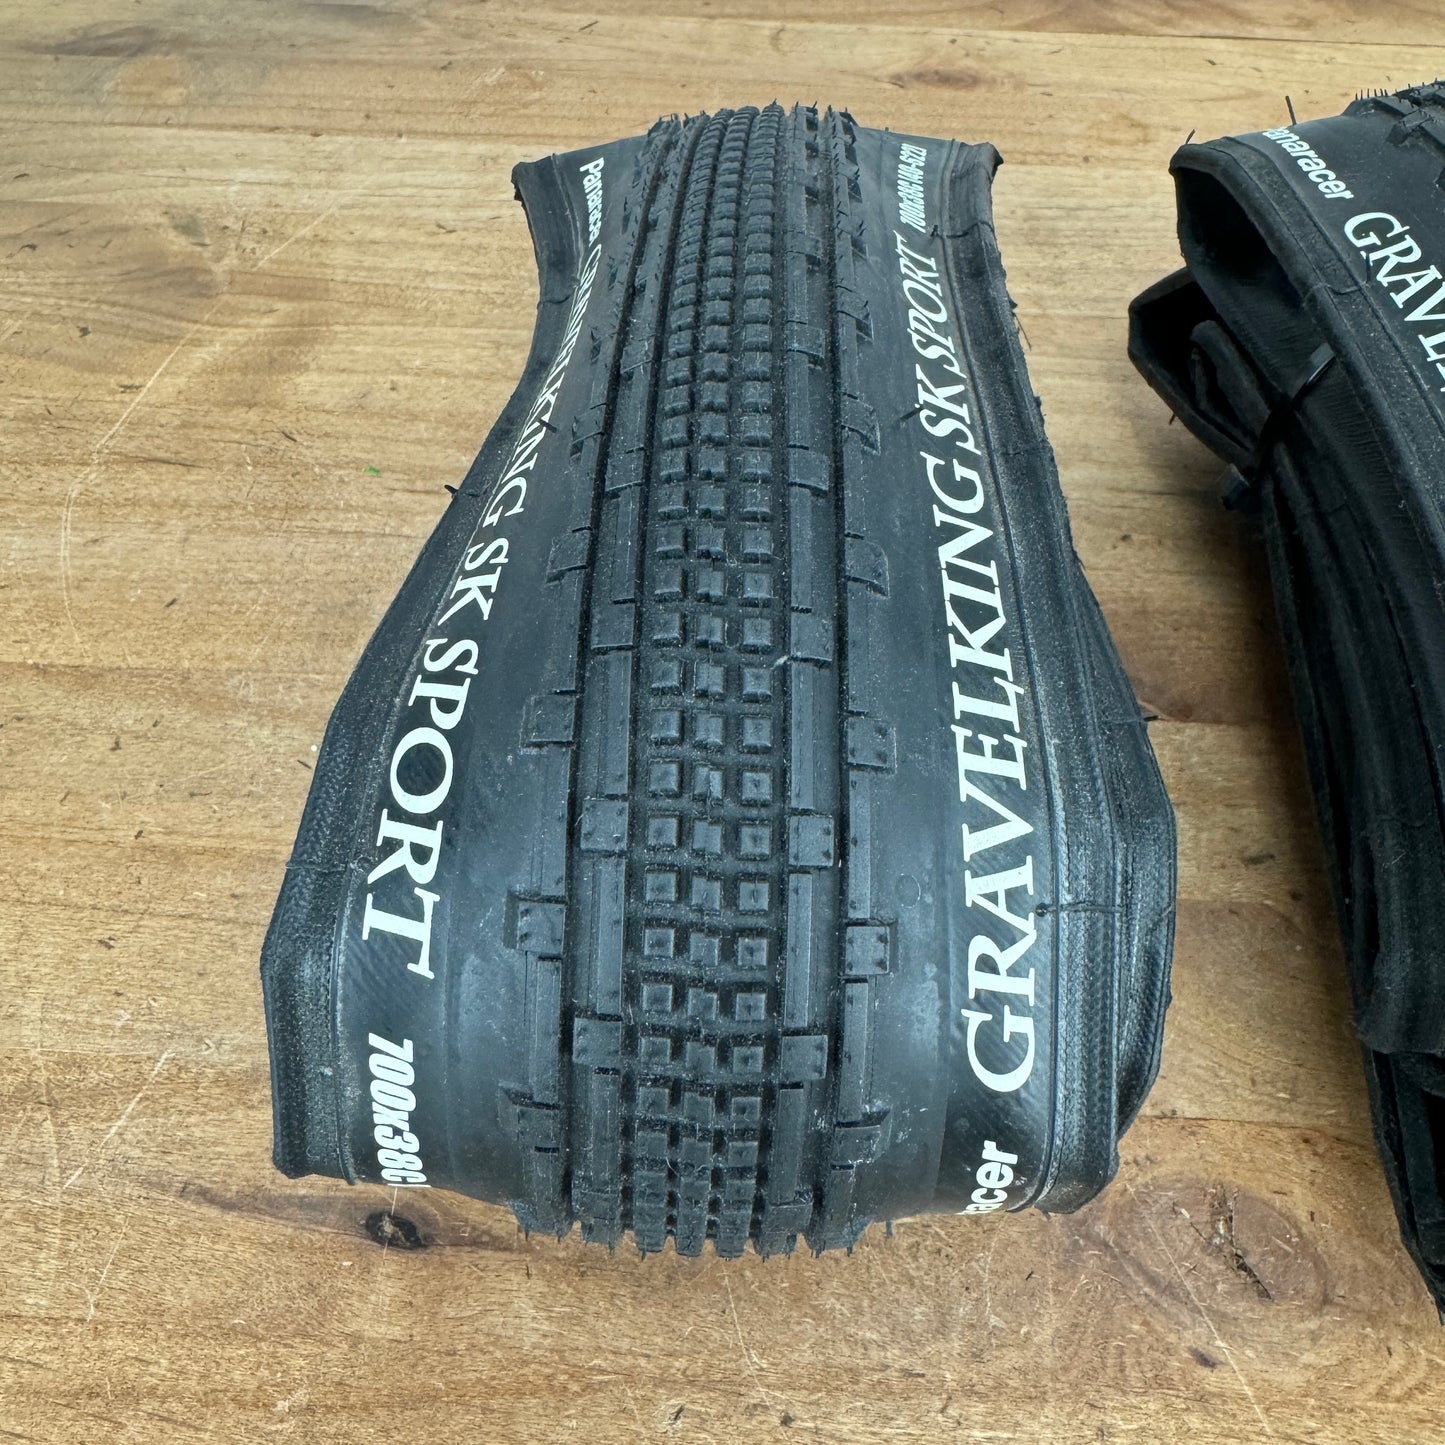 Pair Panaracer Gravel King SK Sport 700c x 38mm Tubeless Tires